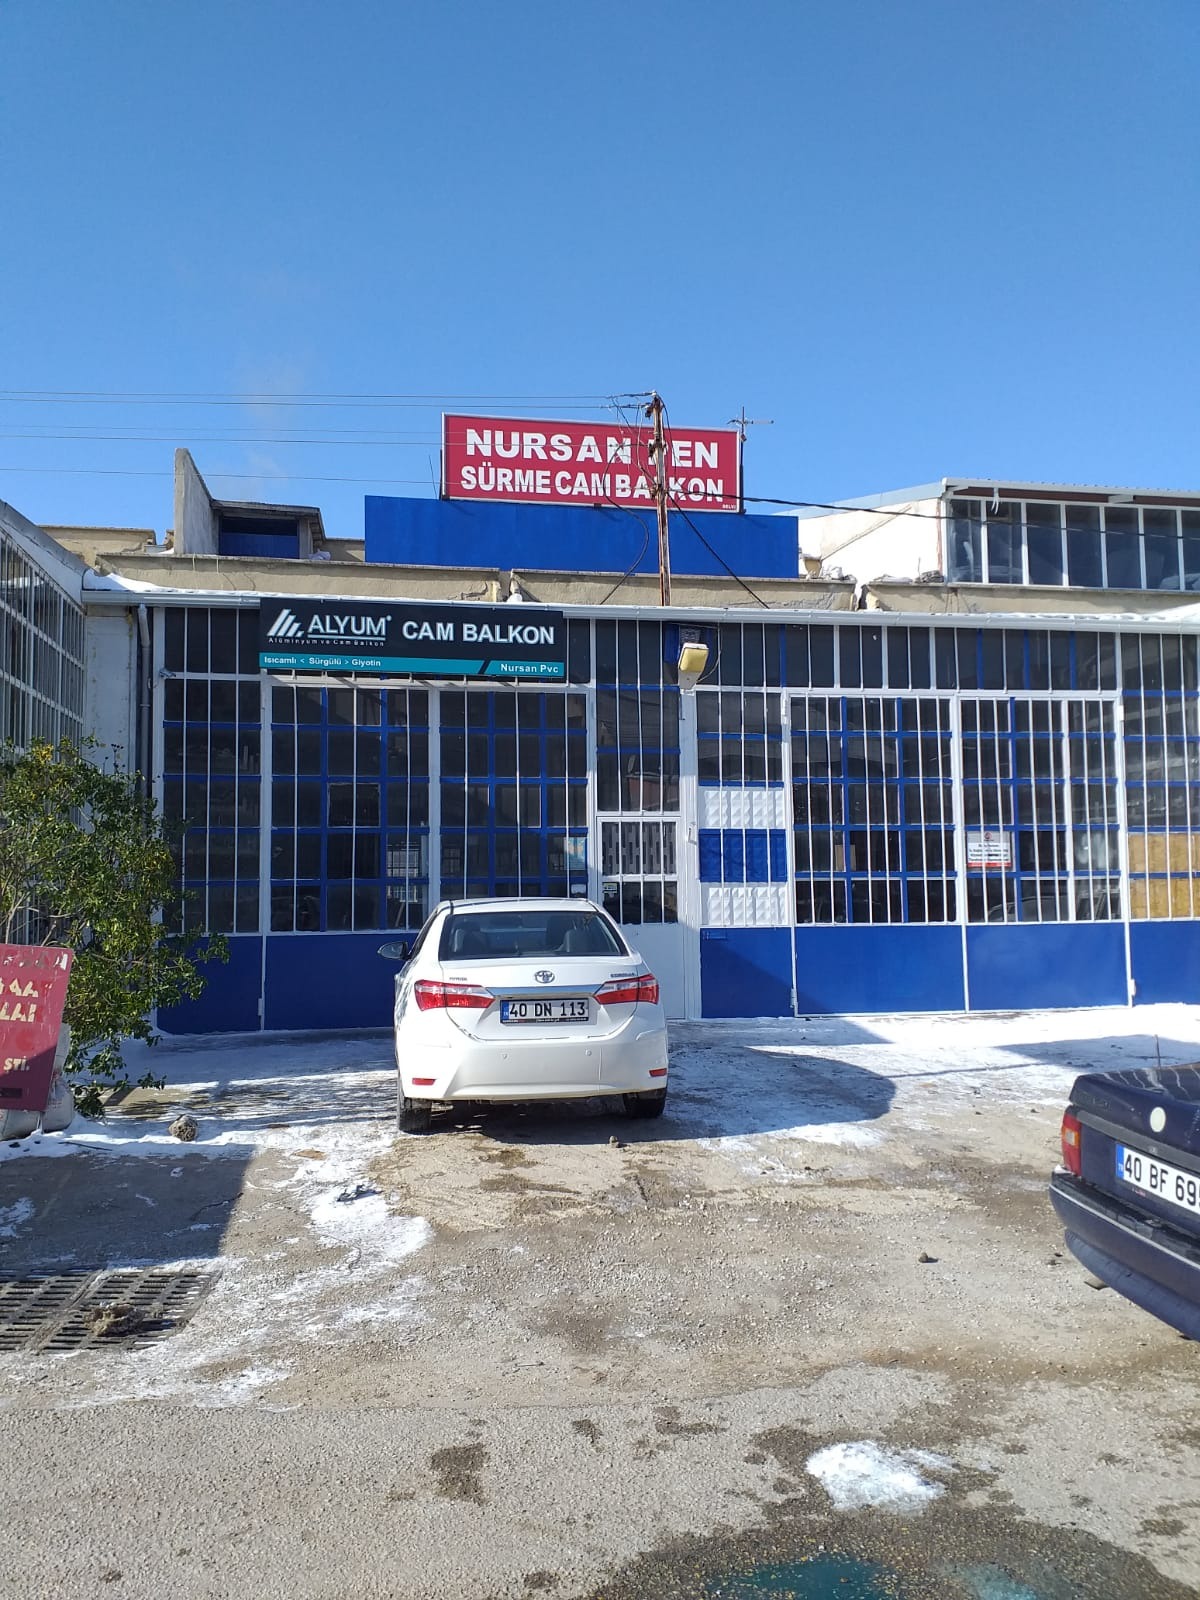 Kırşehir / Nursan Alüminyum ve cam balkon